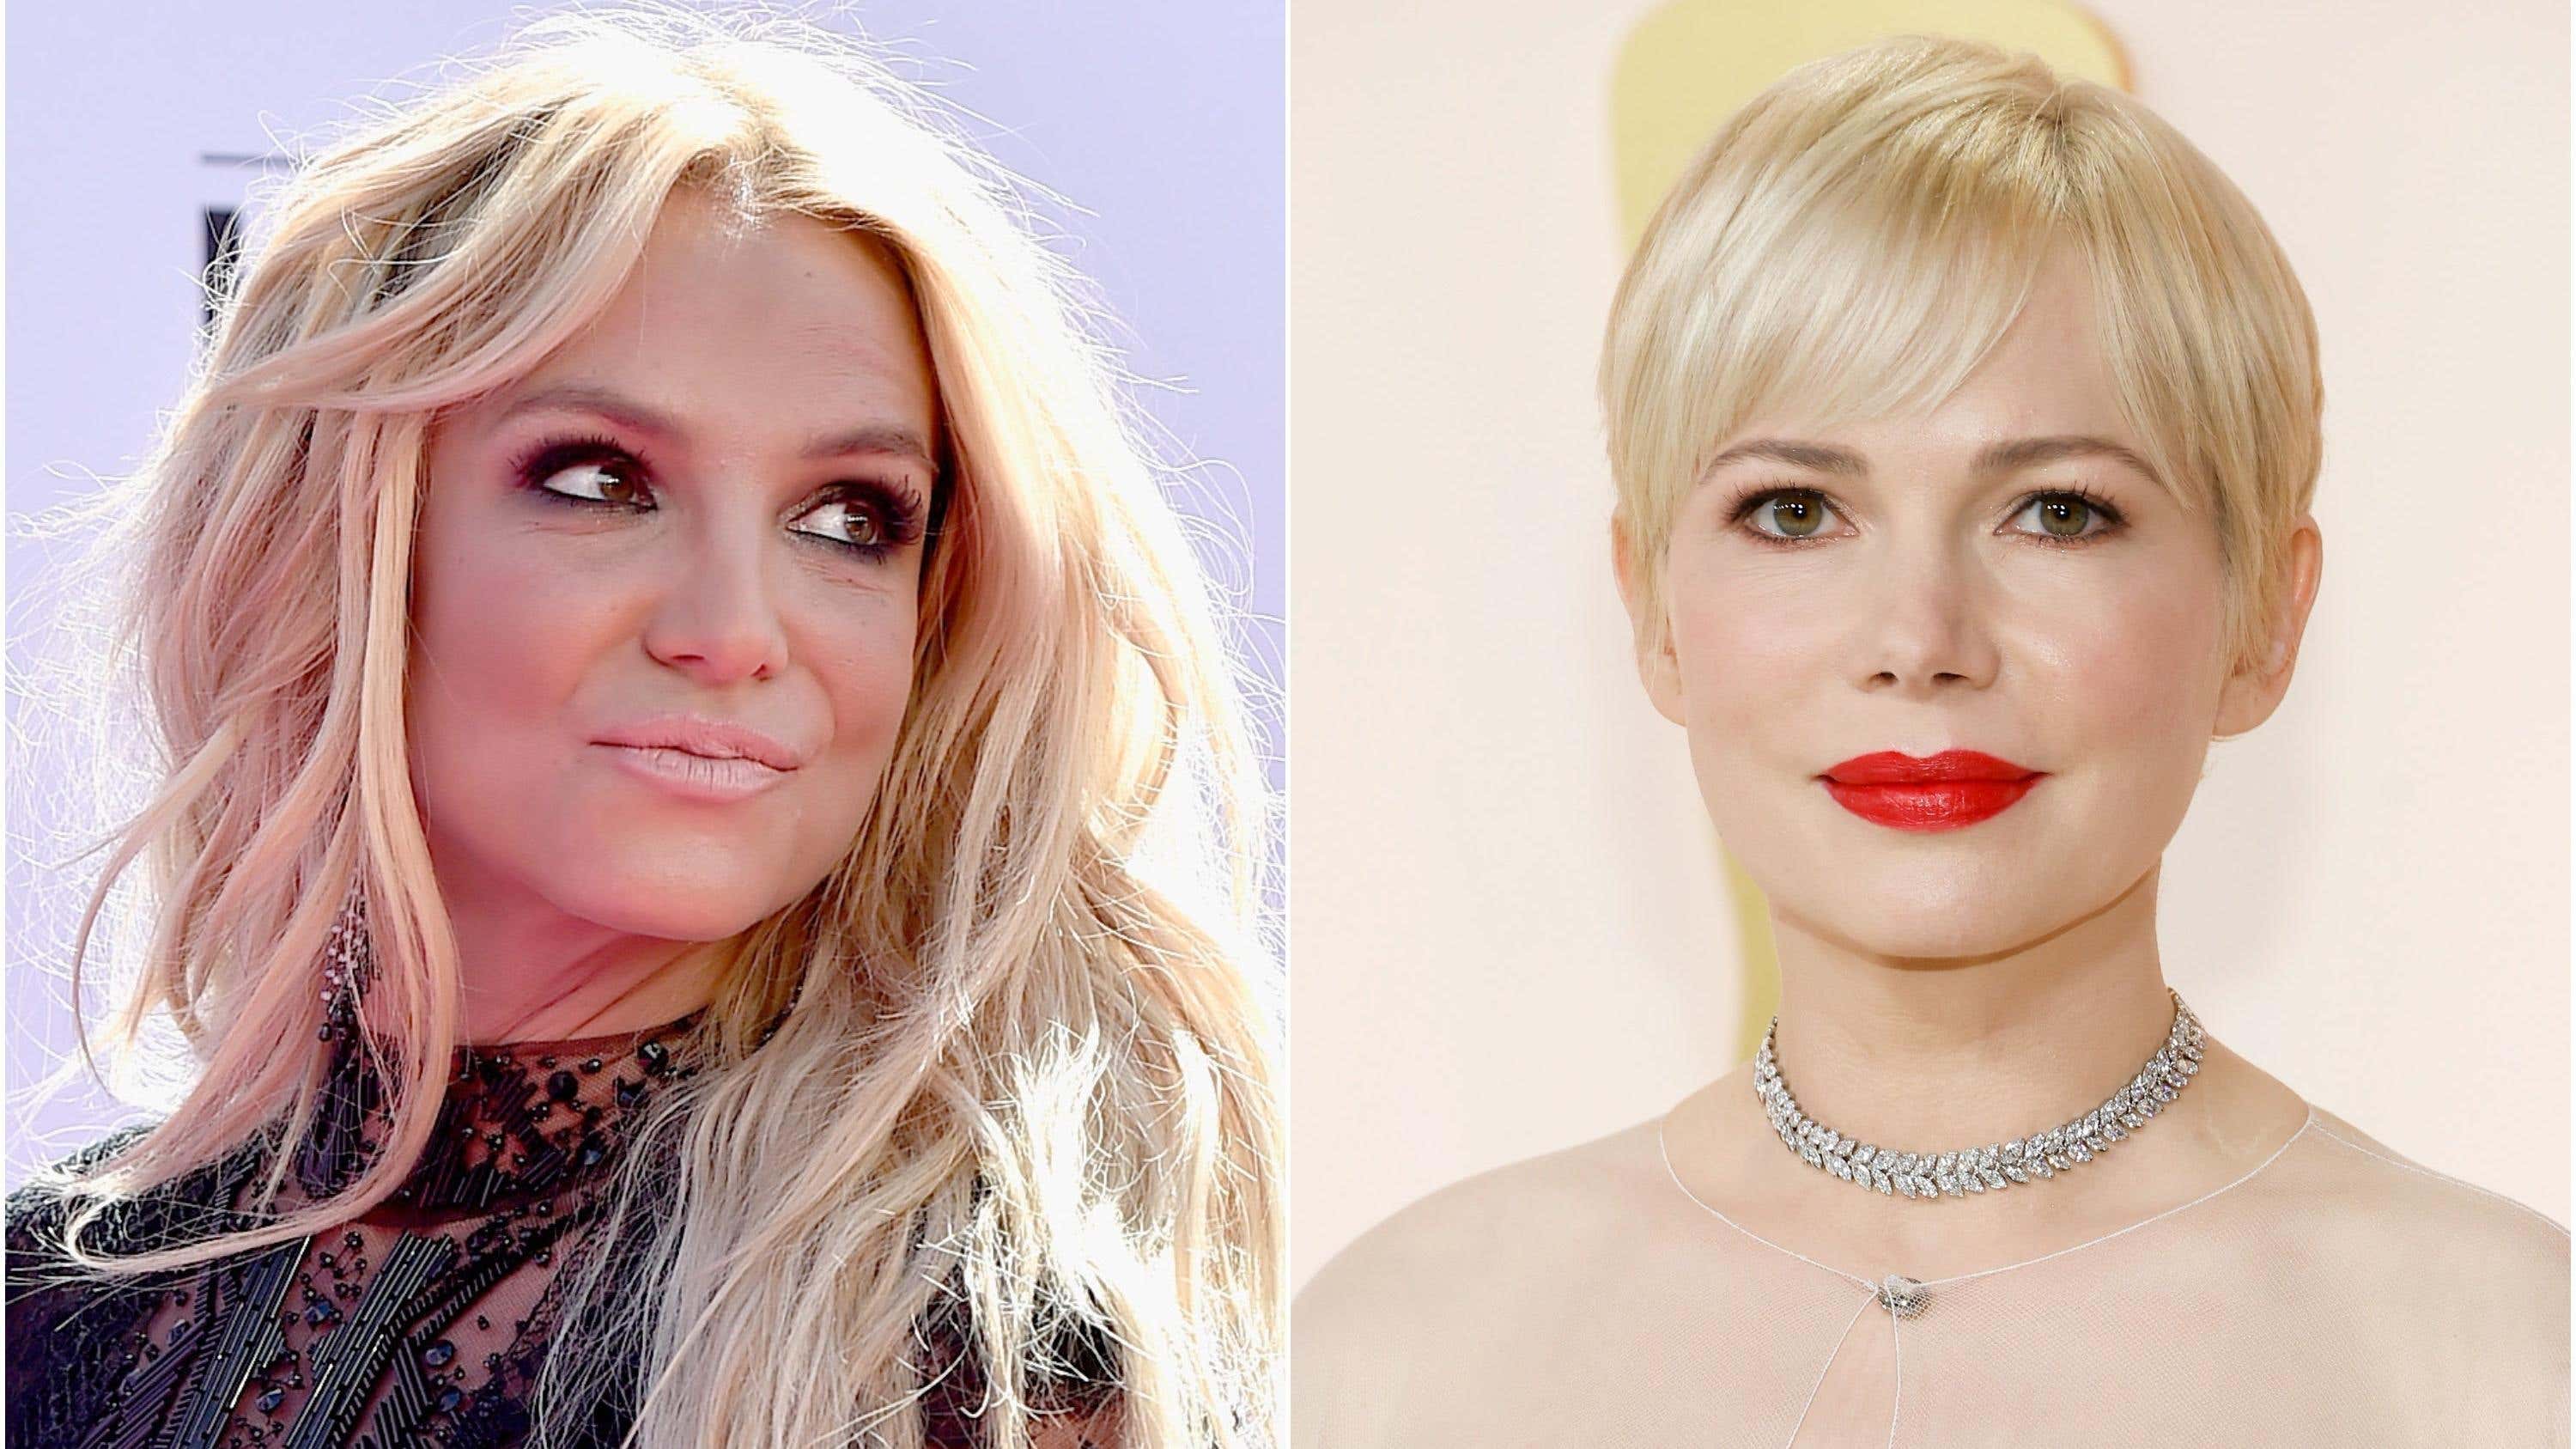 Die Memoiren von Britney Spears werden von Michelle Williams erzählt